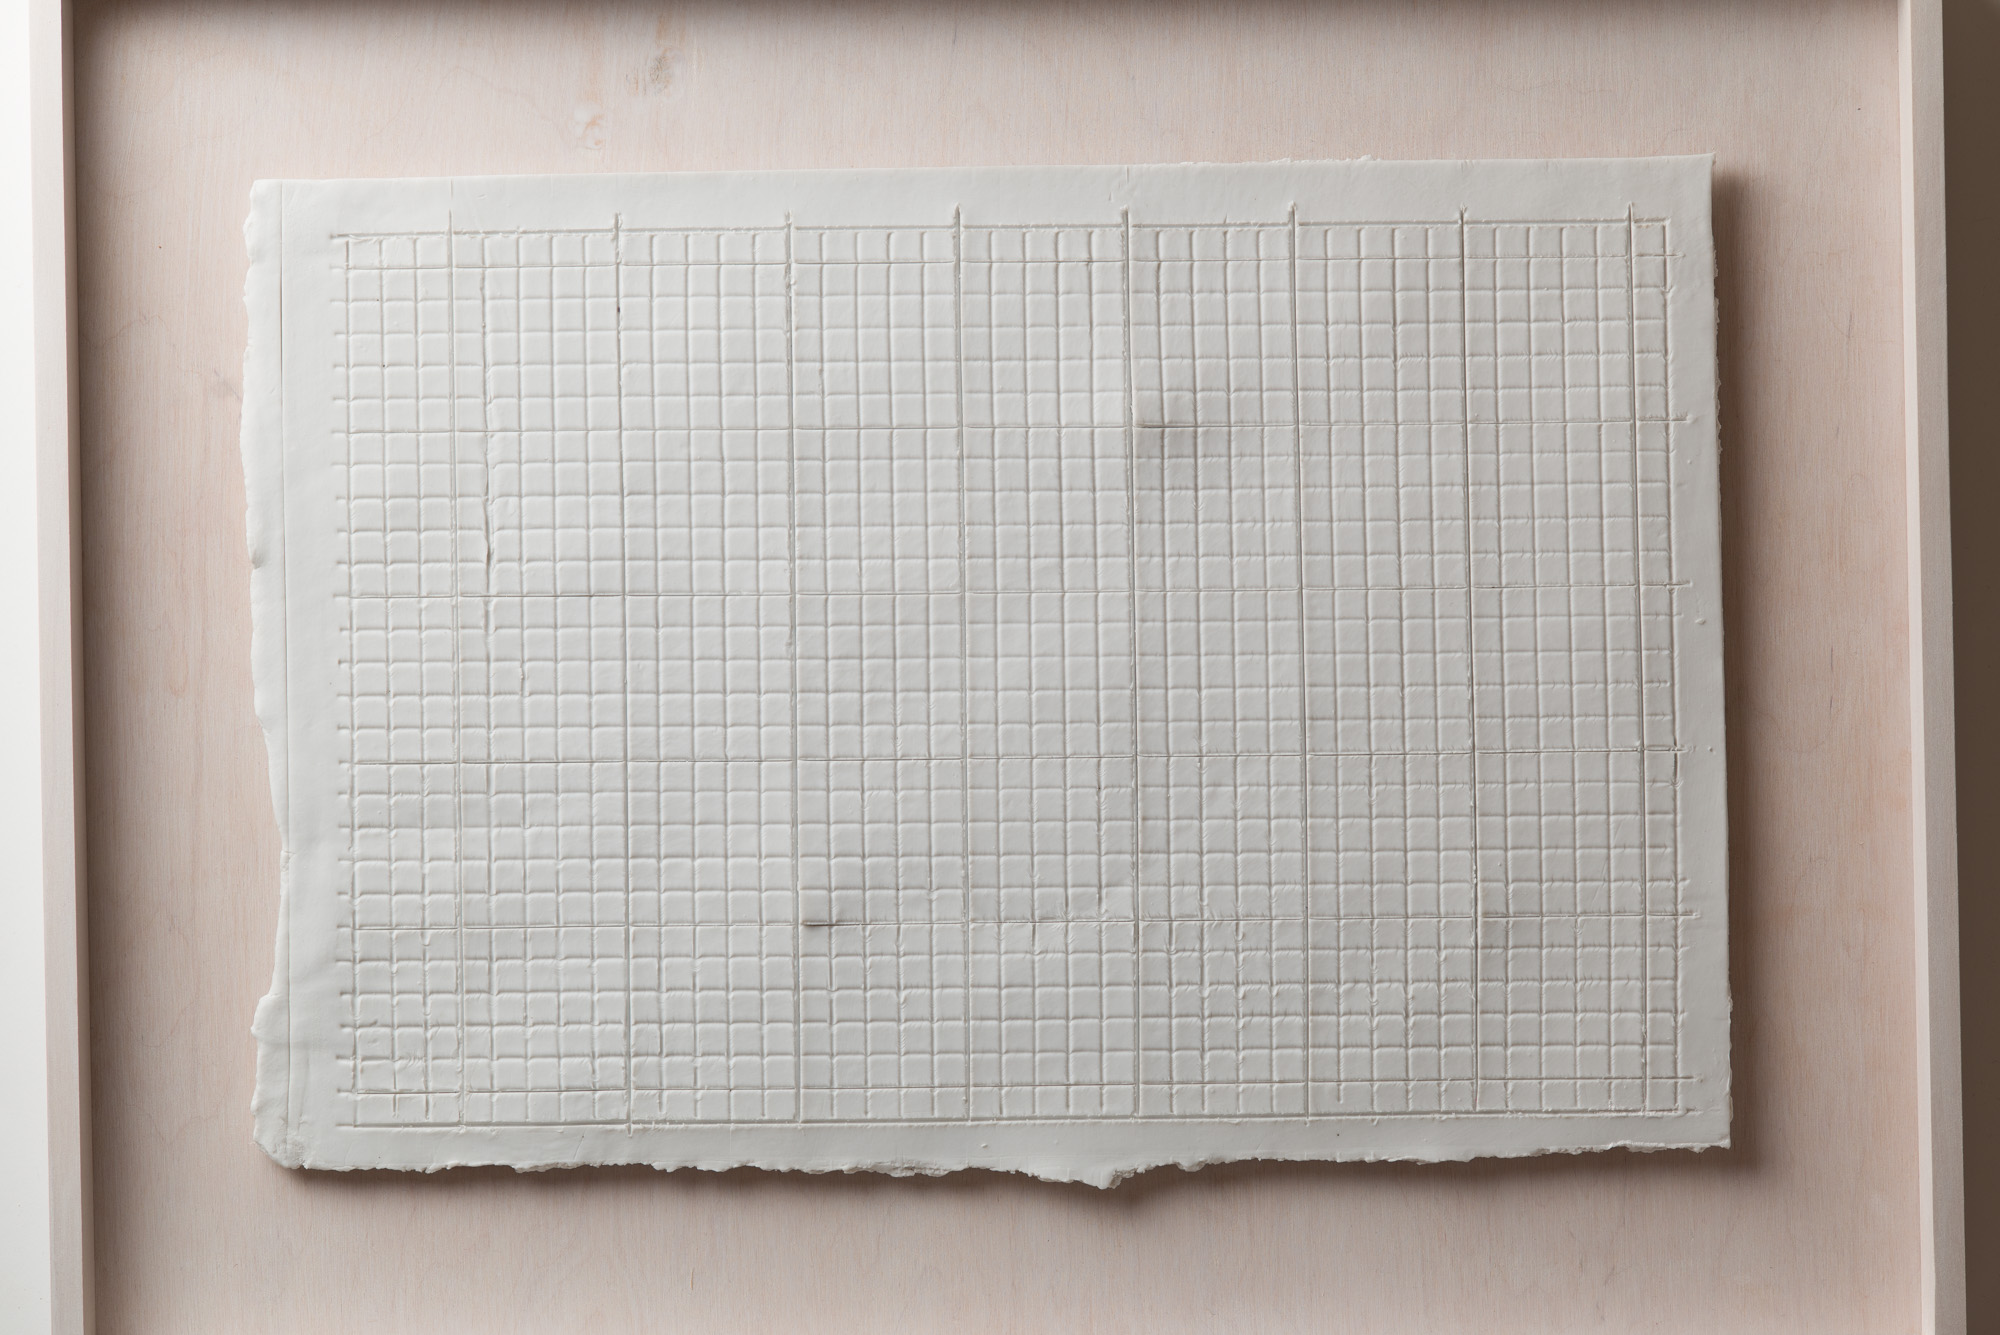 NÉMA Júlia: Beosztás I. / Disposition I. (2020) papírporcelán / paperporcelain 38 x 26 x 1 cm (49,5 x 37,5 x 3,5 cm) fotó: Czigány Ákos